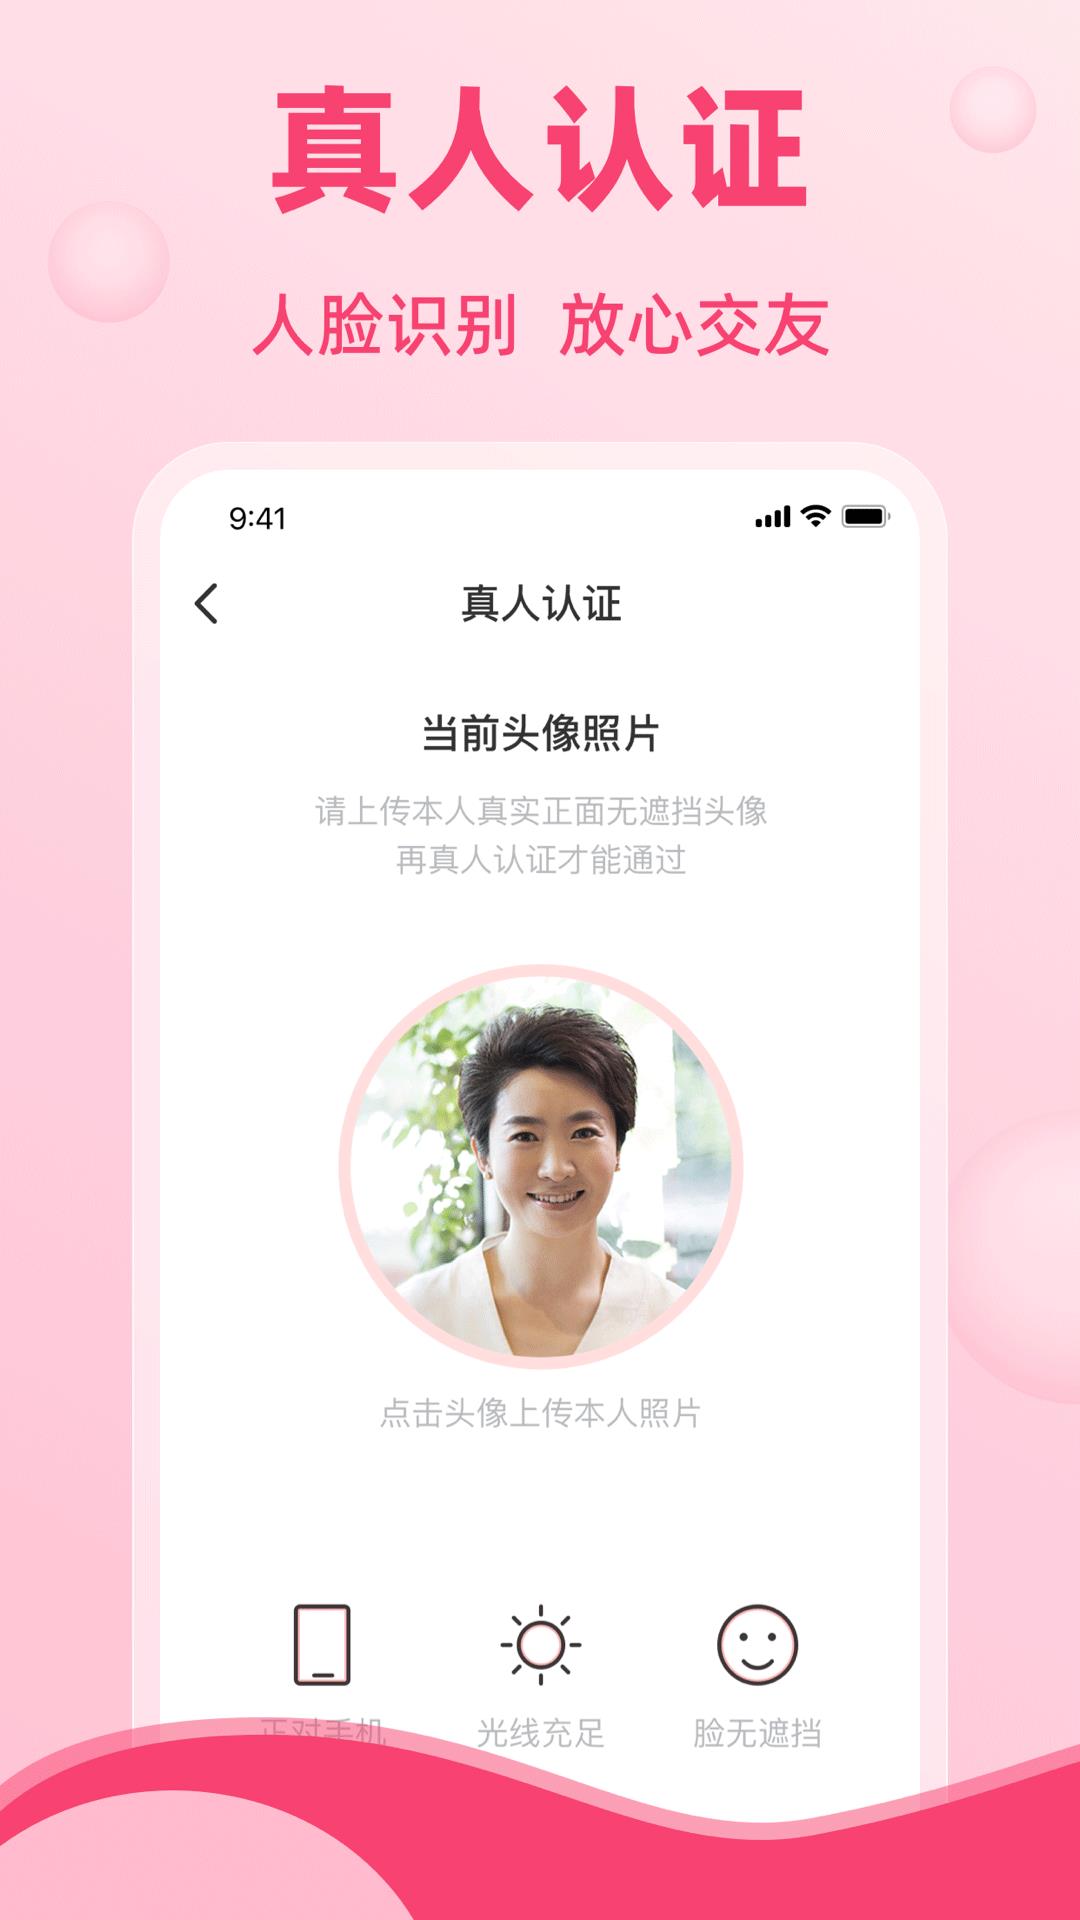 晚恋-中老年交友婚恋平台  v1.0.0图4